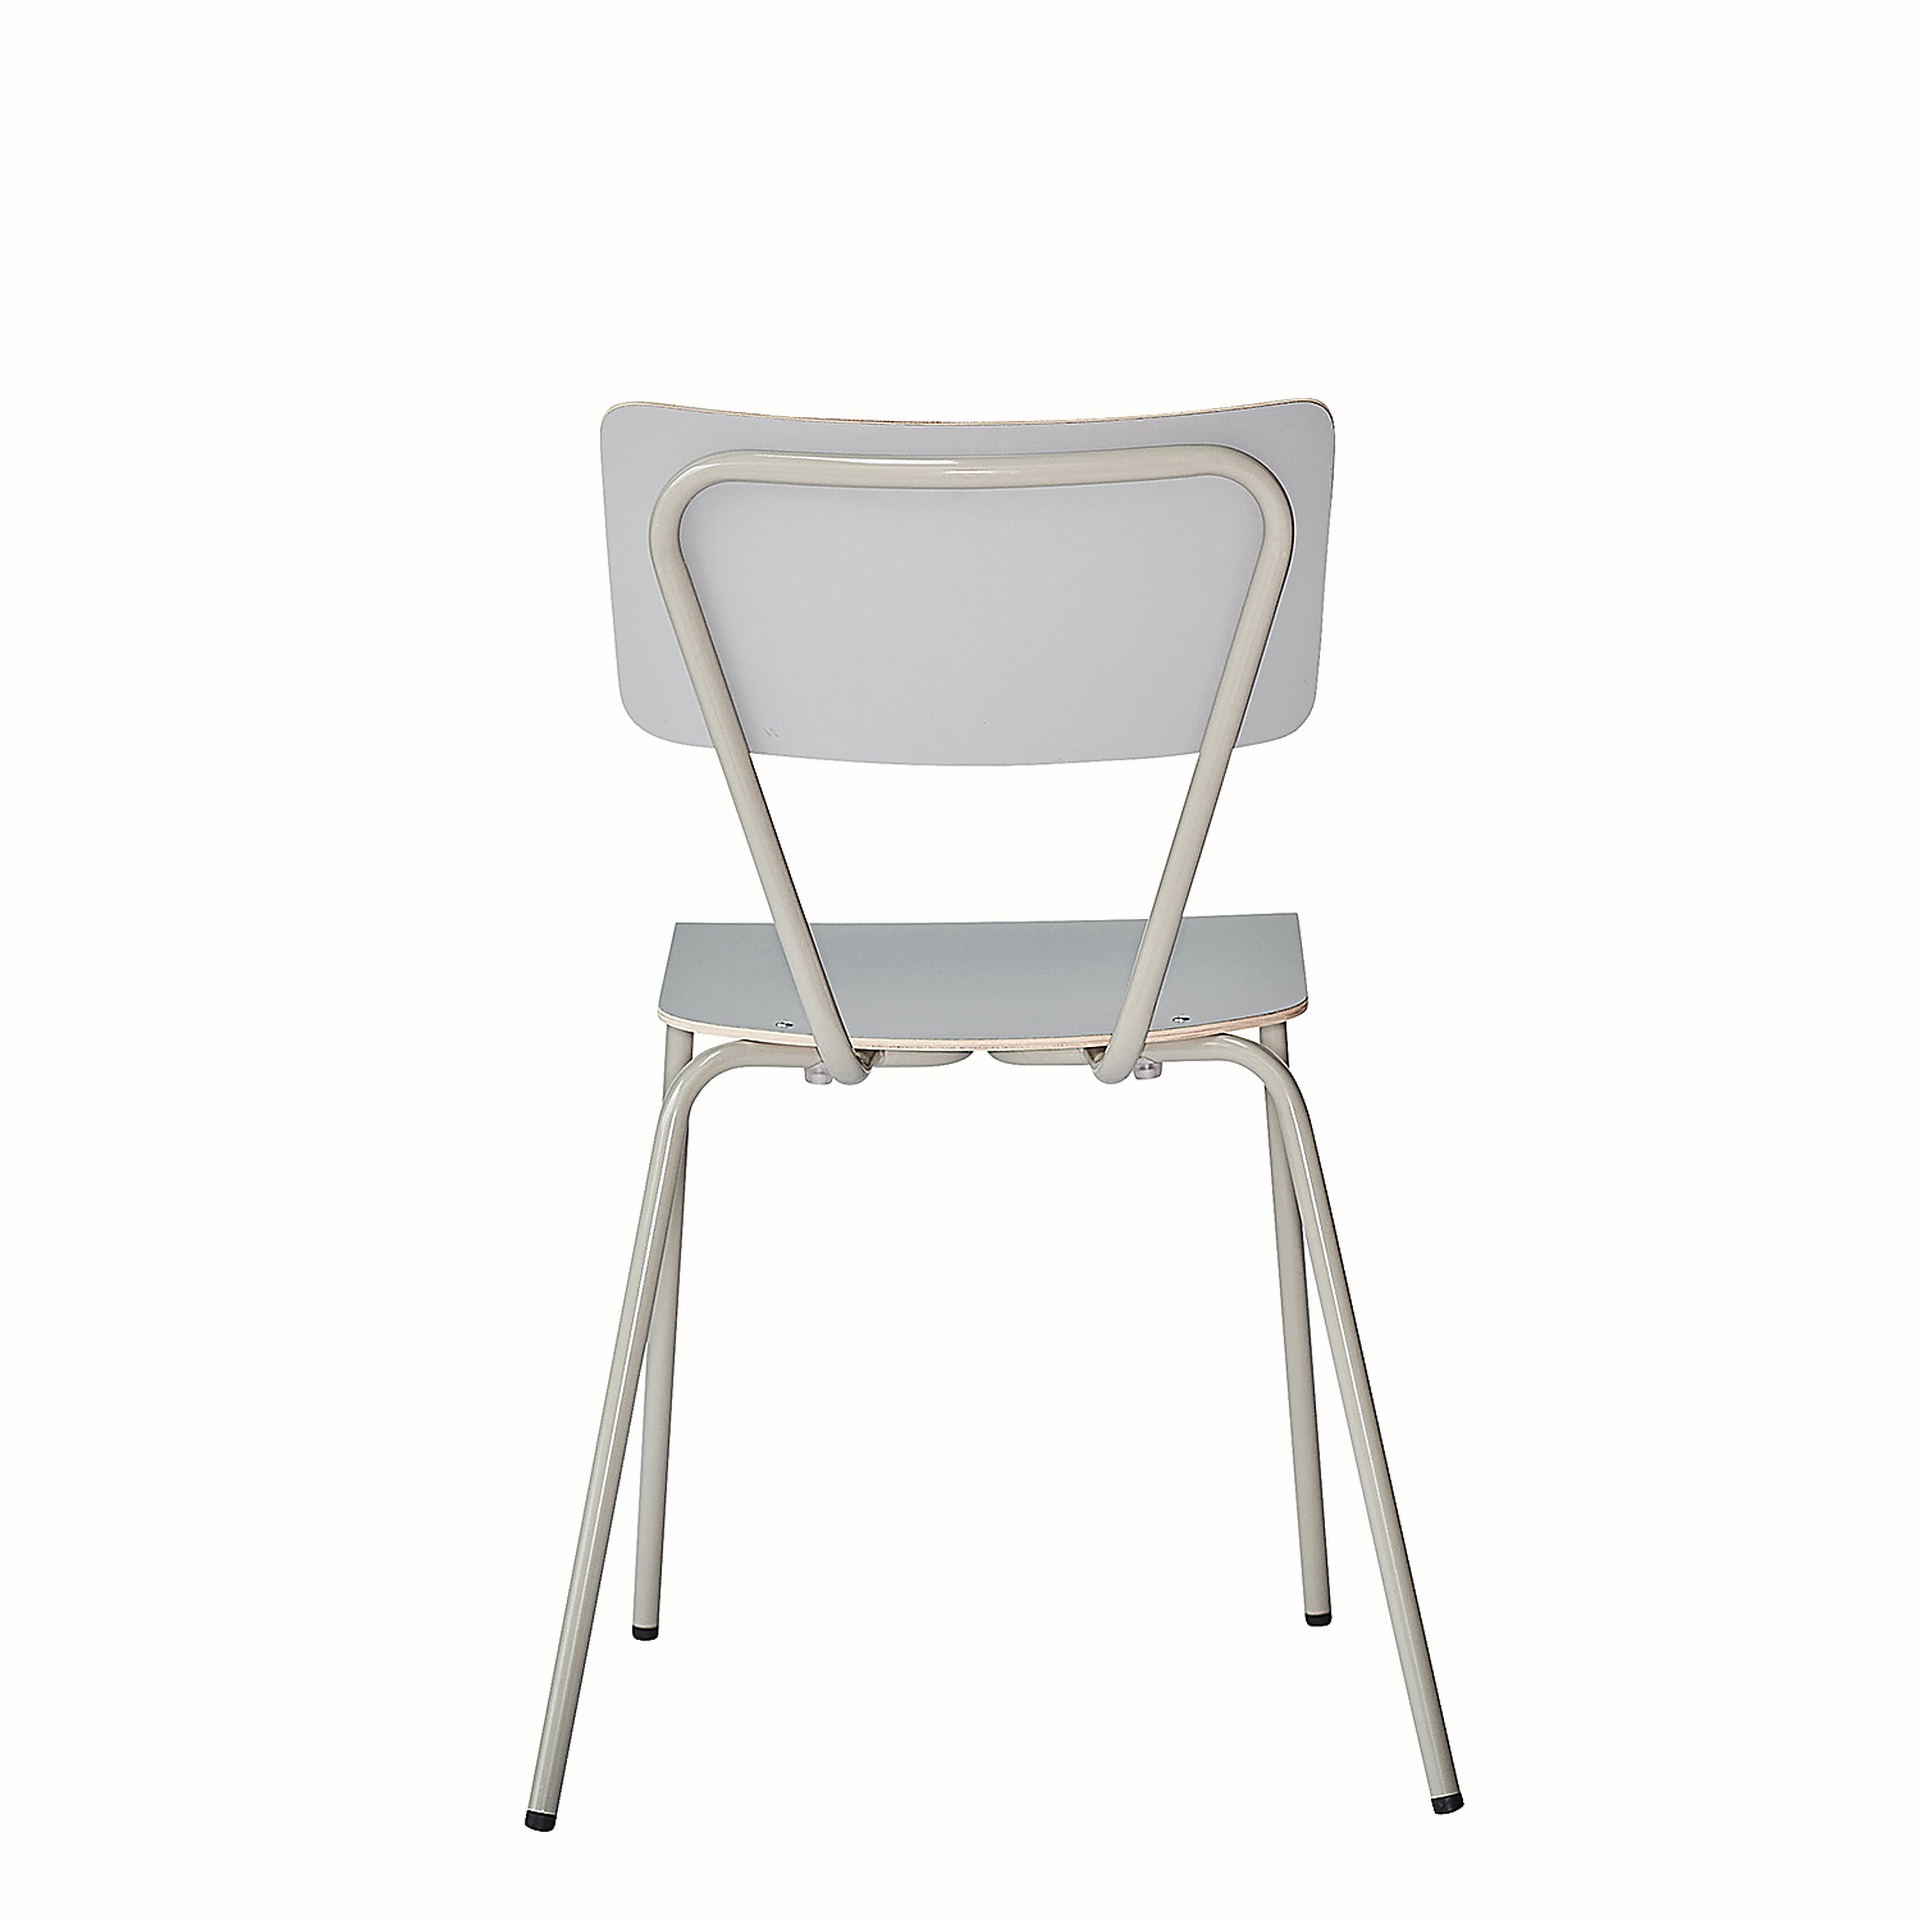 Der schlichte Stuhl Clio wurde aus Metall gefertigt und besitzt eine Taupe Farbe. Er ist eine Produkt der Marke Jan Kurtz.